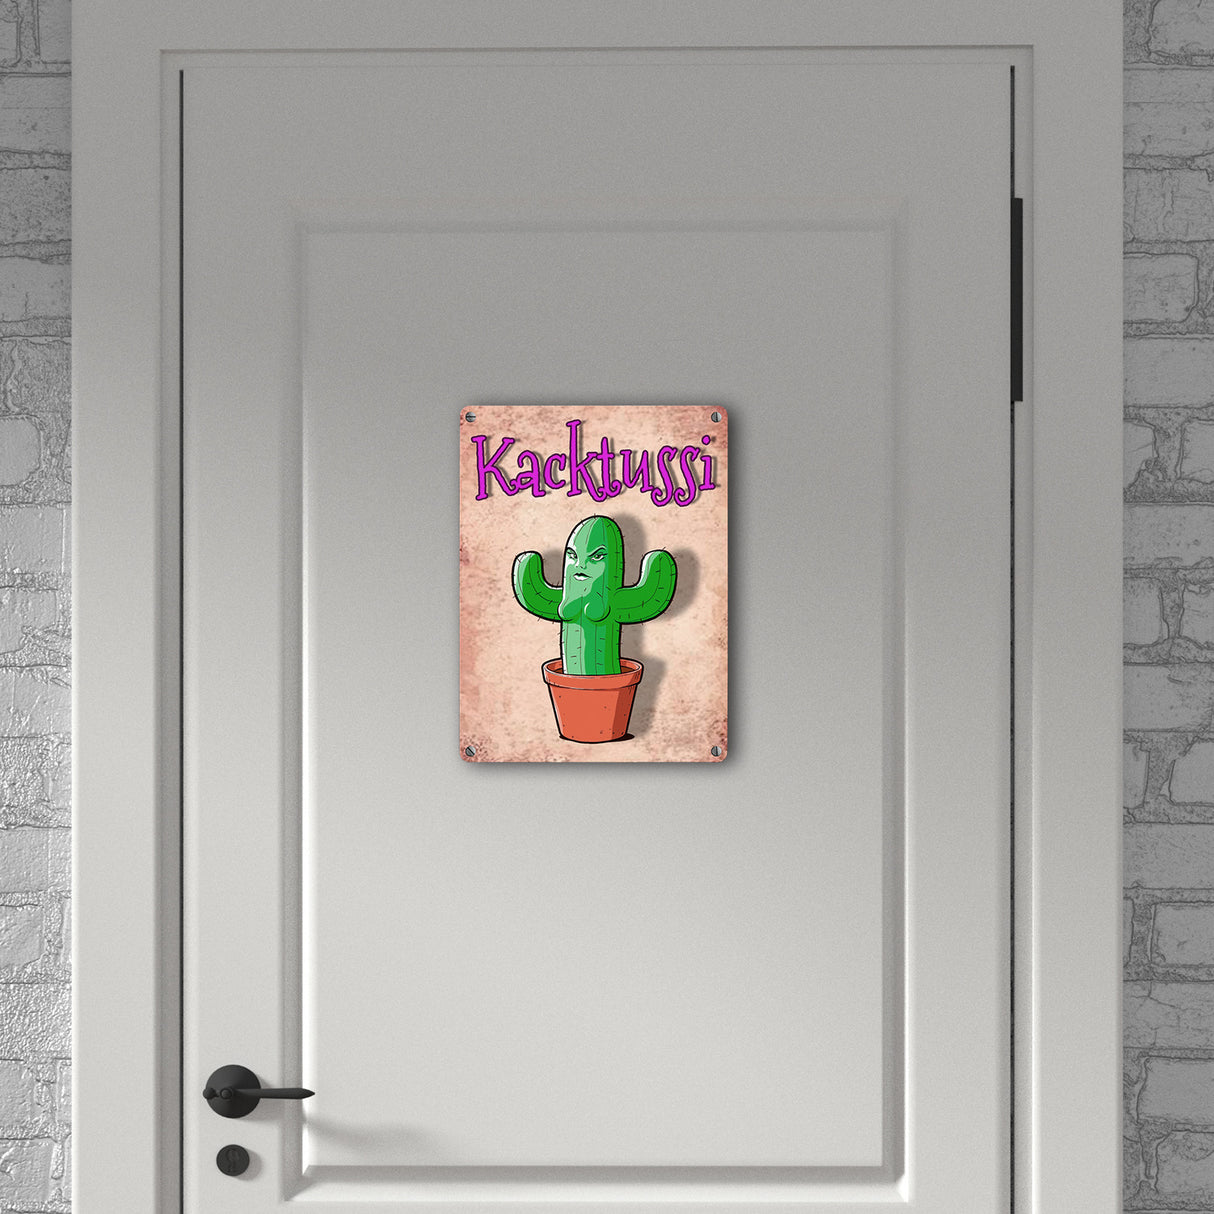 Metallschild mit Kaktus Motiv - Kacktussi Kacktusse mit Brüsten